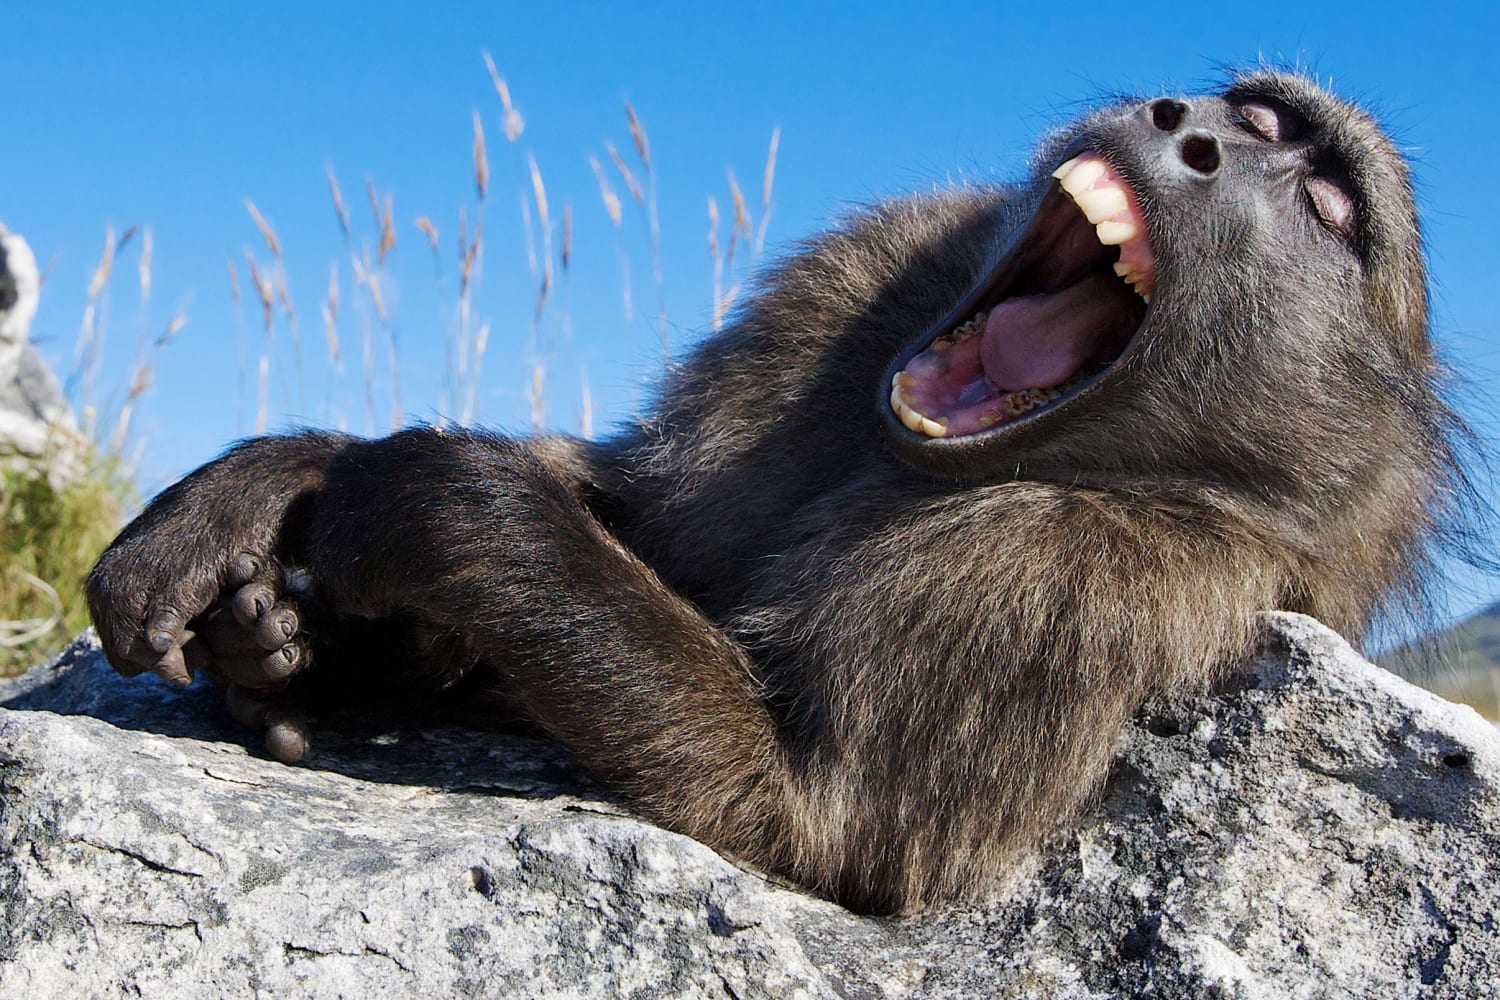 PsBattle: Monkey yawning